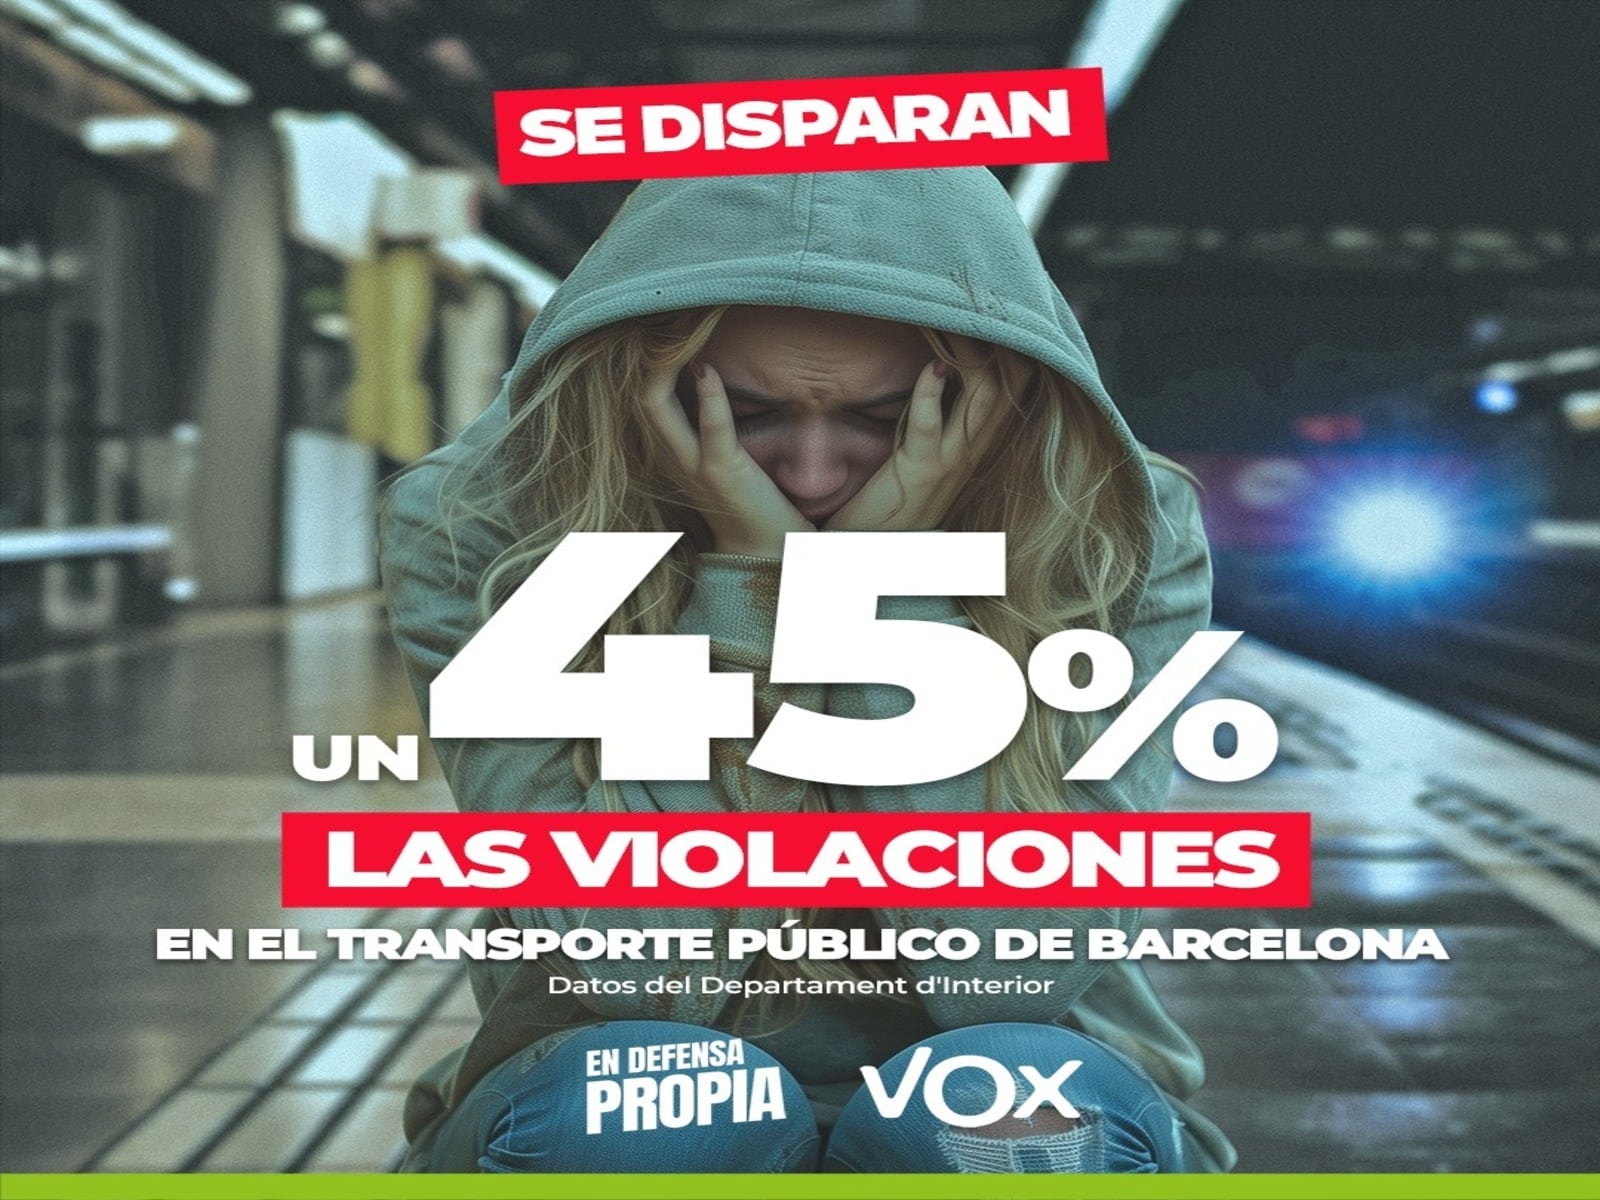 Metro de Barcelona censura una campaña de VOX que denuncia el aumento de las violaciones en el transporte público